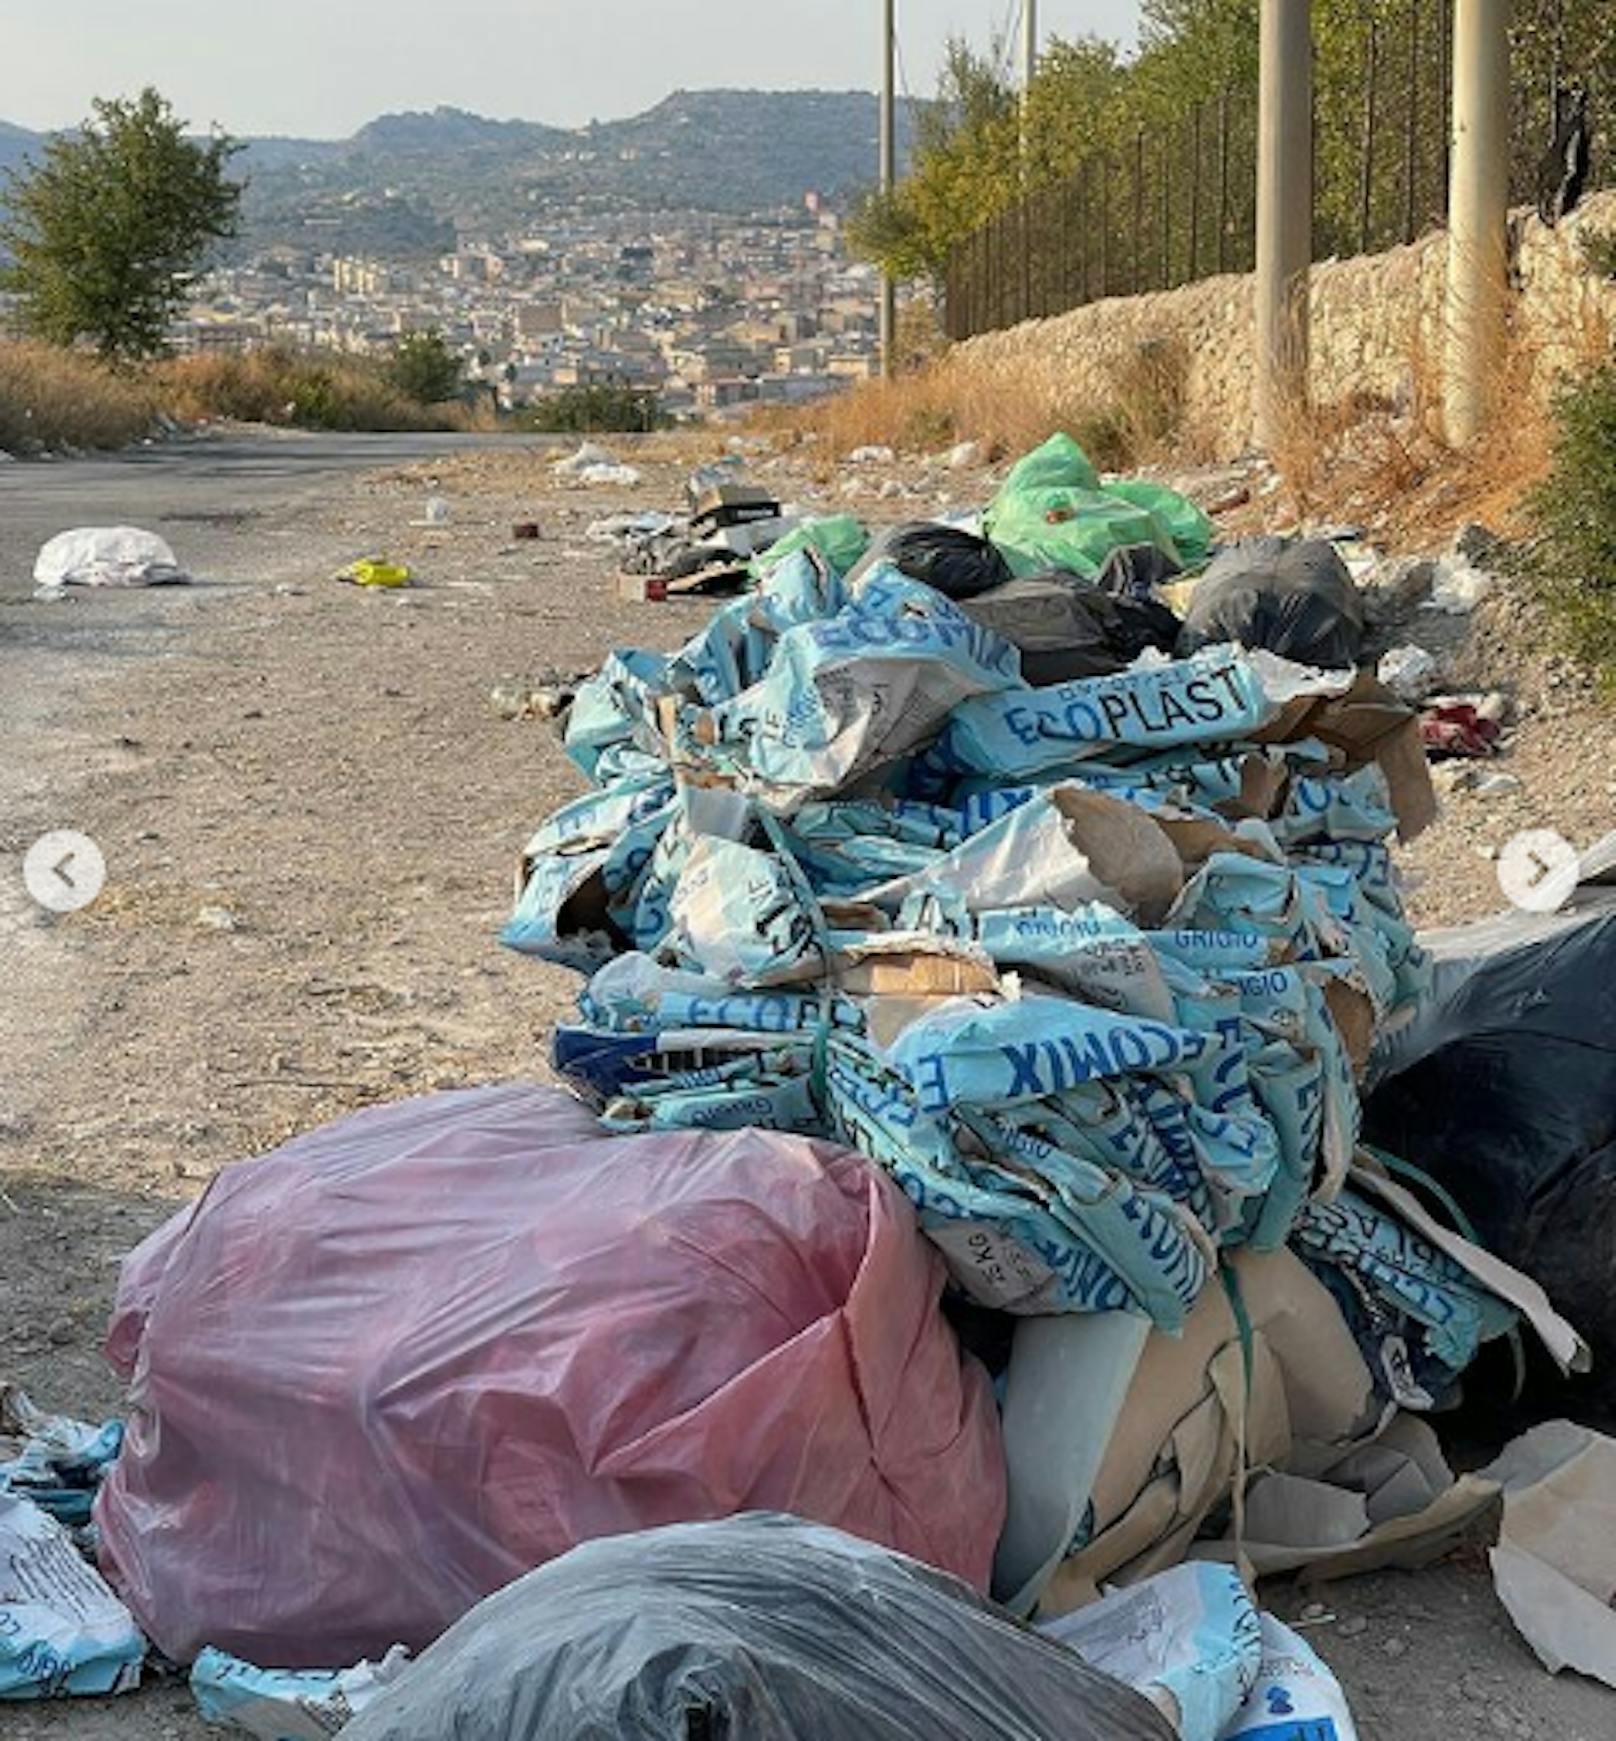 Müll an jeder Ecke – die Bilder malen ein trauriges Bild der sizilianischen Stadt.